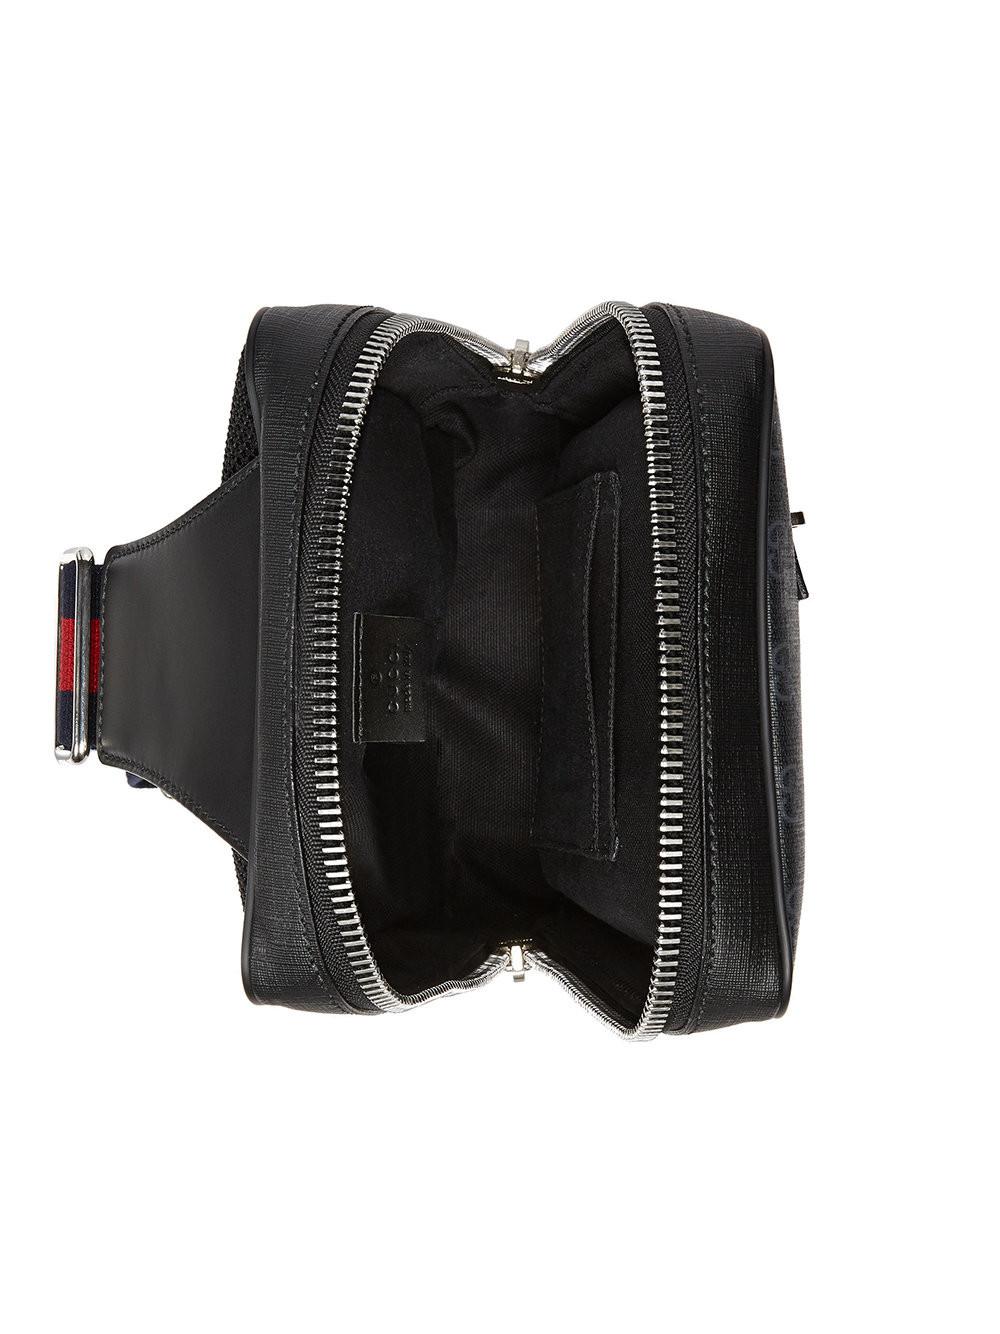 Gucci GG Supreme Belt Bag in Black for Men - Lyst